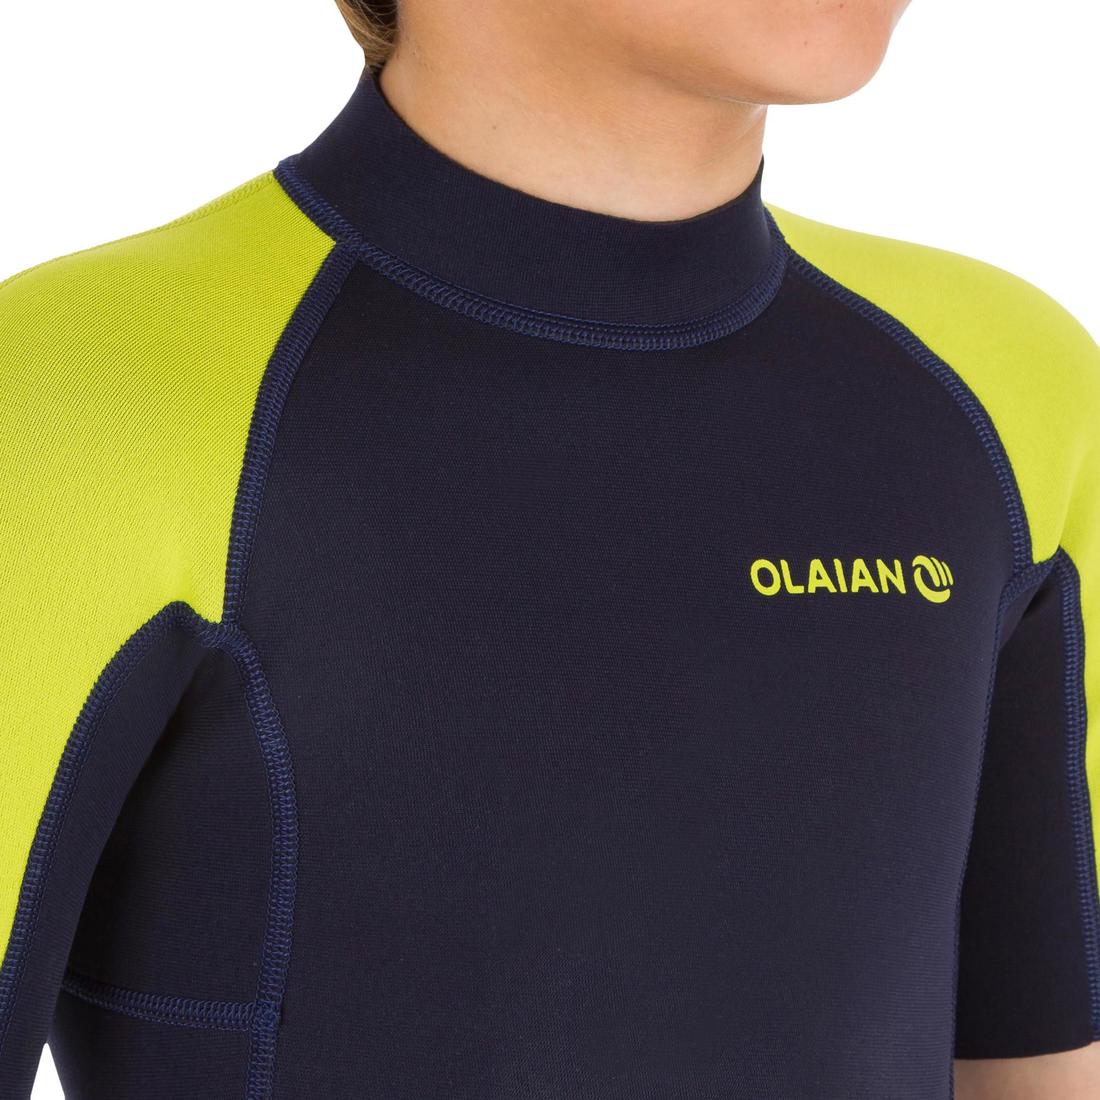 OLAIAN(オライアン) サーフィン・ビーチ  ウェットスーツ スプリング 1.5mm キッズ